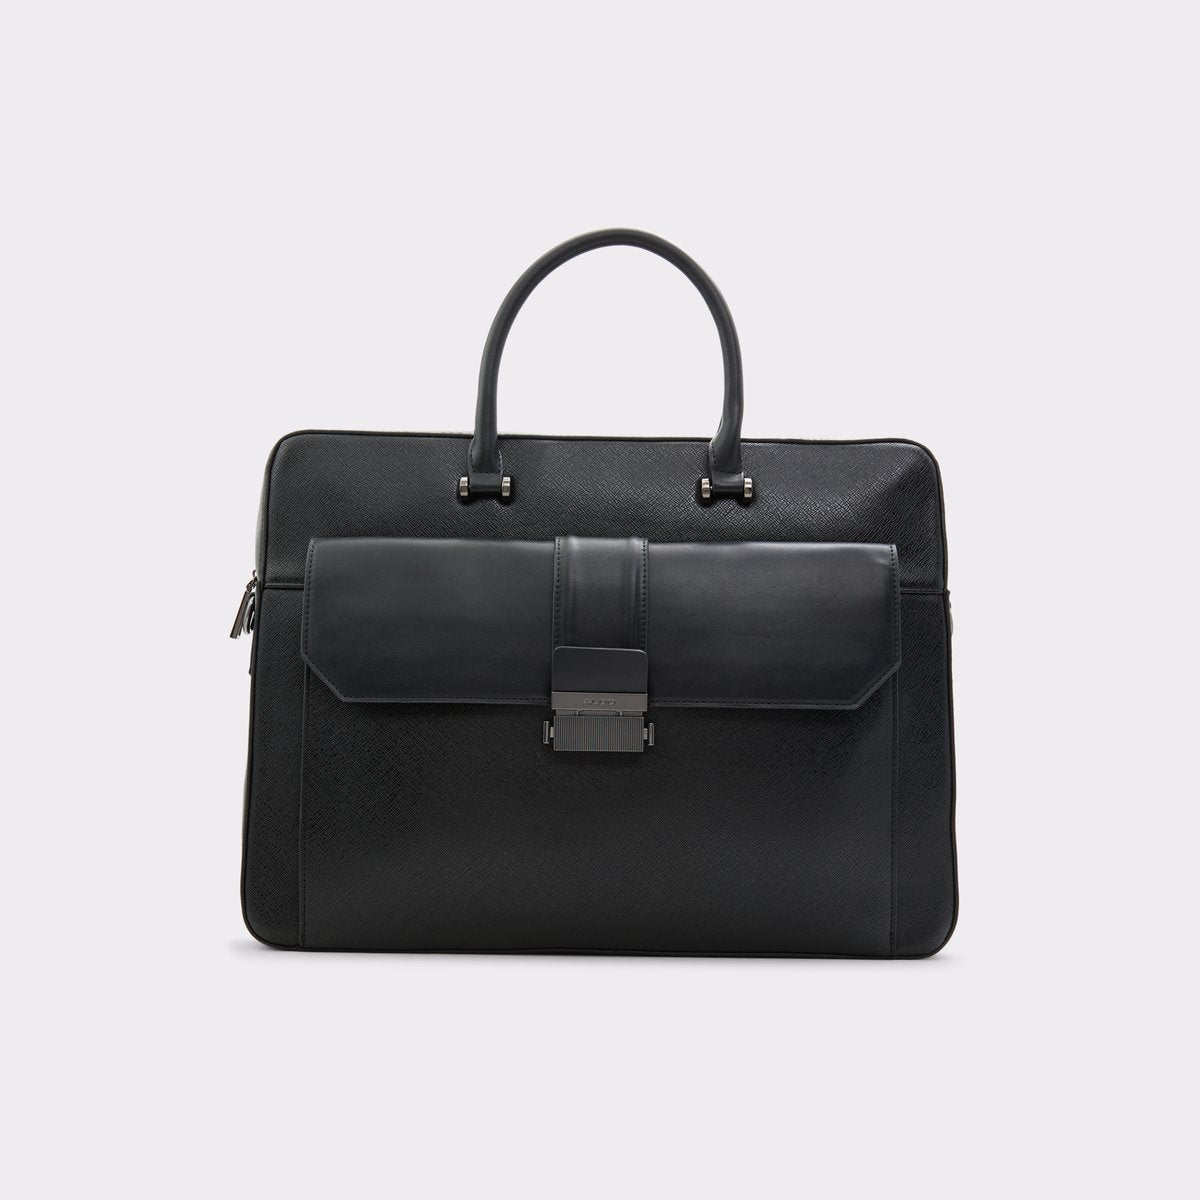 Vermon / Laptop Bag Bag - Black - ALDO KSA